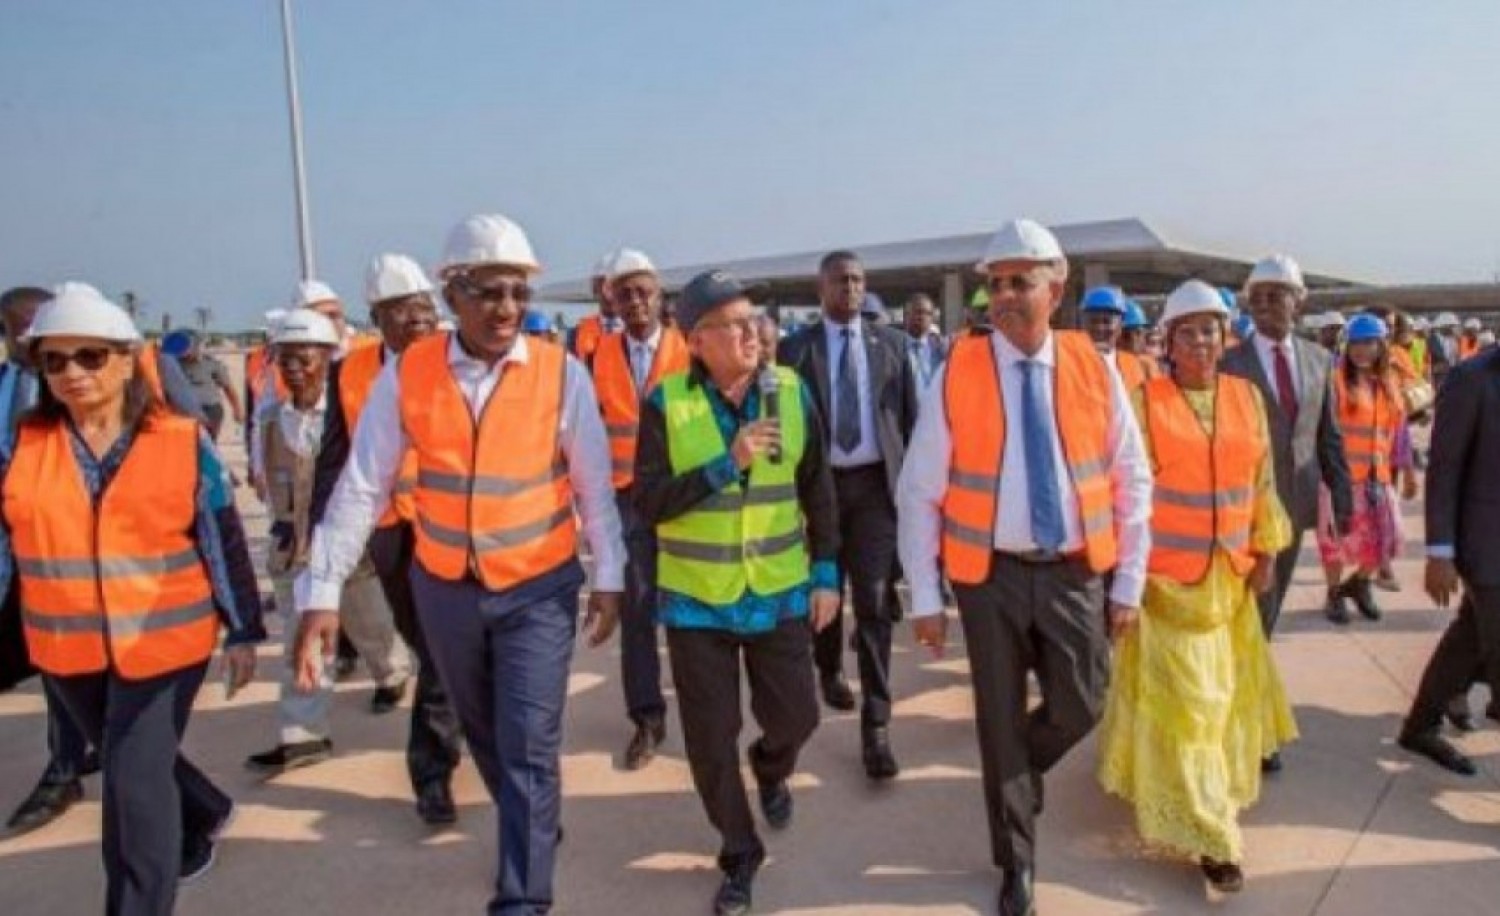 Côte d'Ivoire : Le Premier Ministre annoncé samedi à Daloa, Issia et Guiglo pour le lancement des travaux d'infrastructures routières